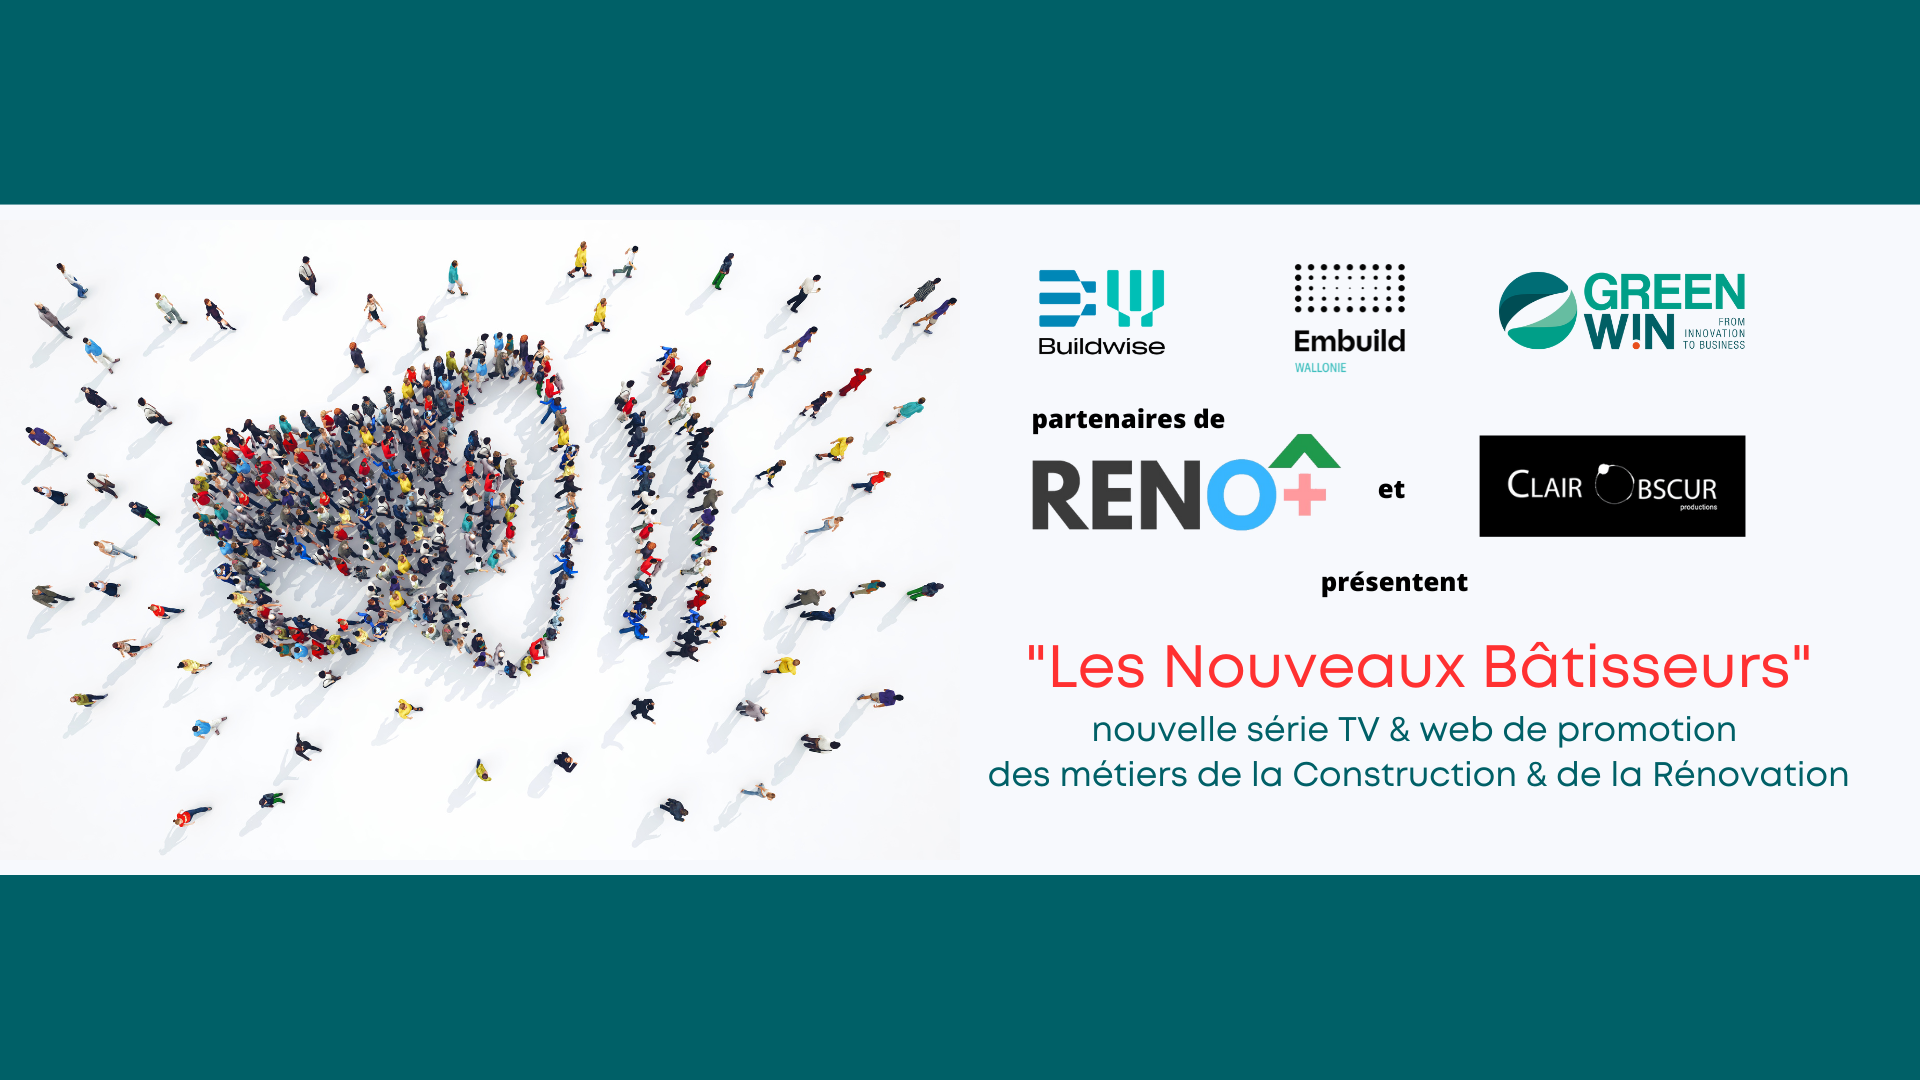 Dans le cadre du projet RENO+, Embuild Wallonie, Buildwise et GreenWin lancent la campagne « Les Nouveaux Bâtisseurs », une nouvelle série TV & web.